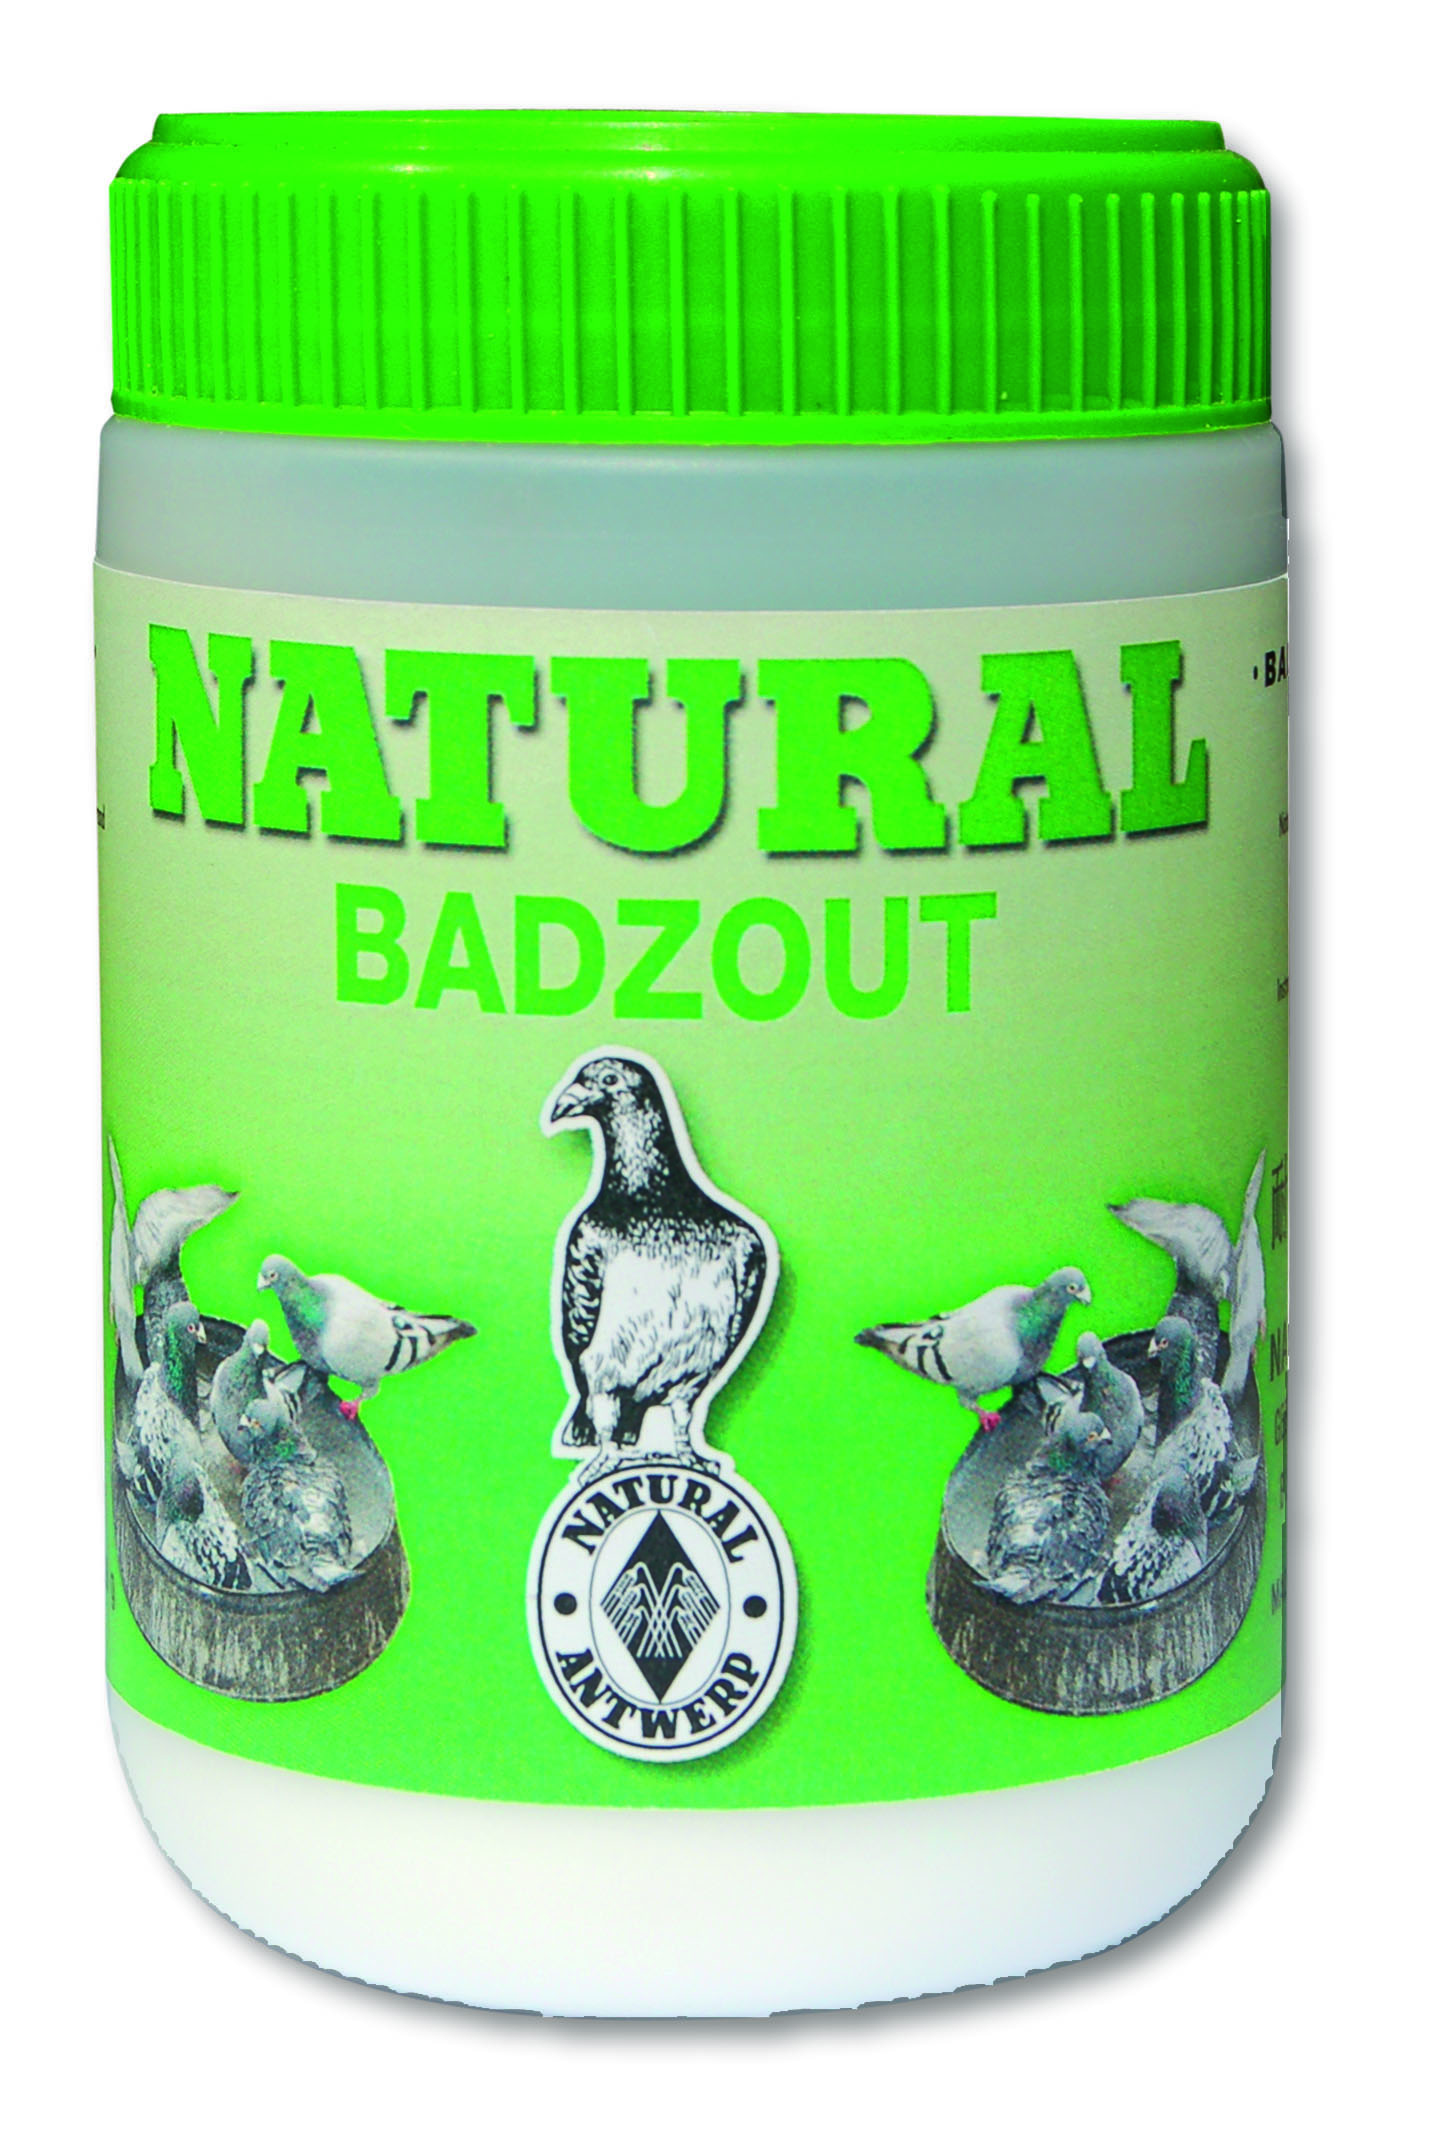 Natural bath salts - Product shot